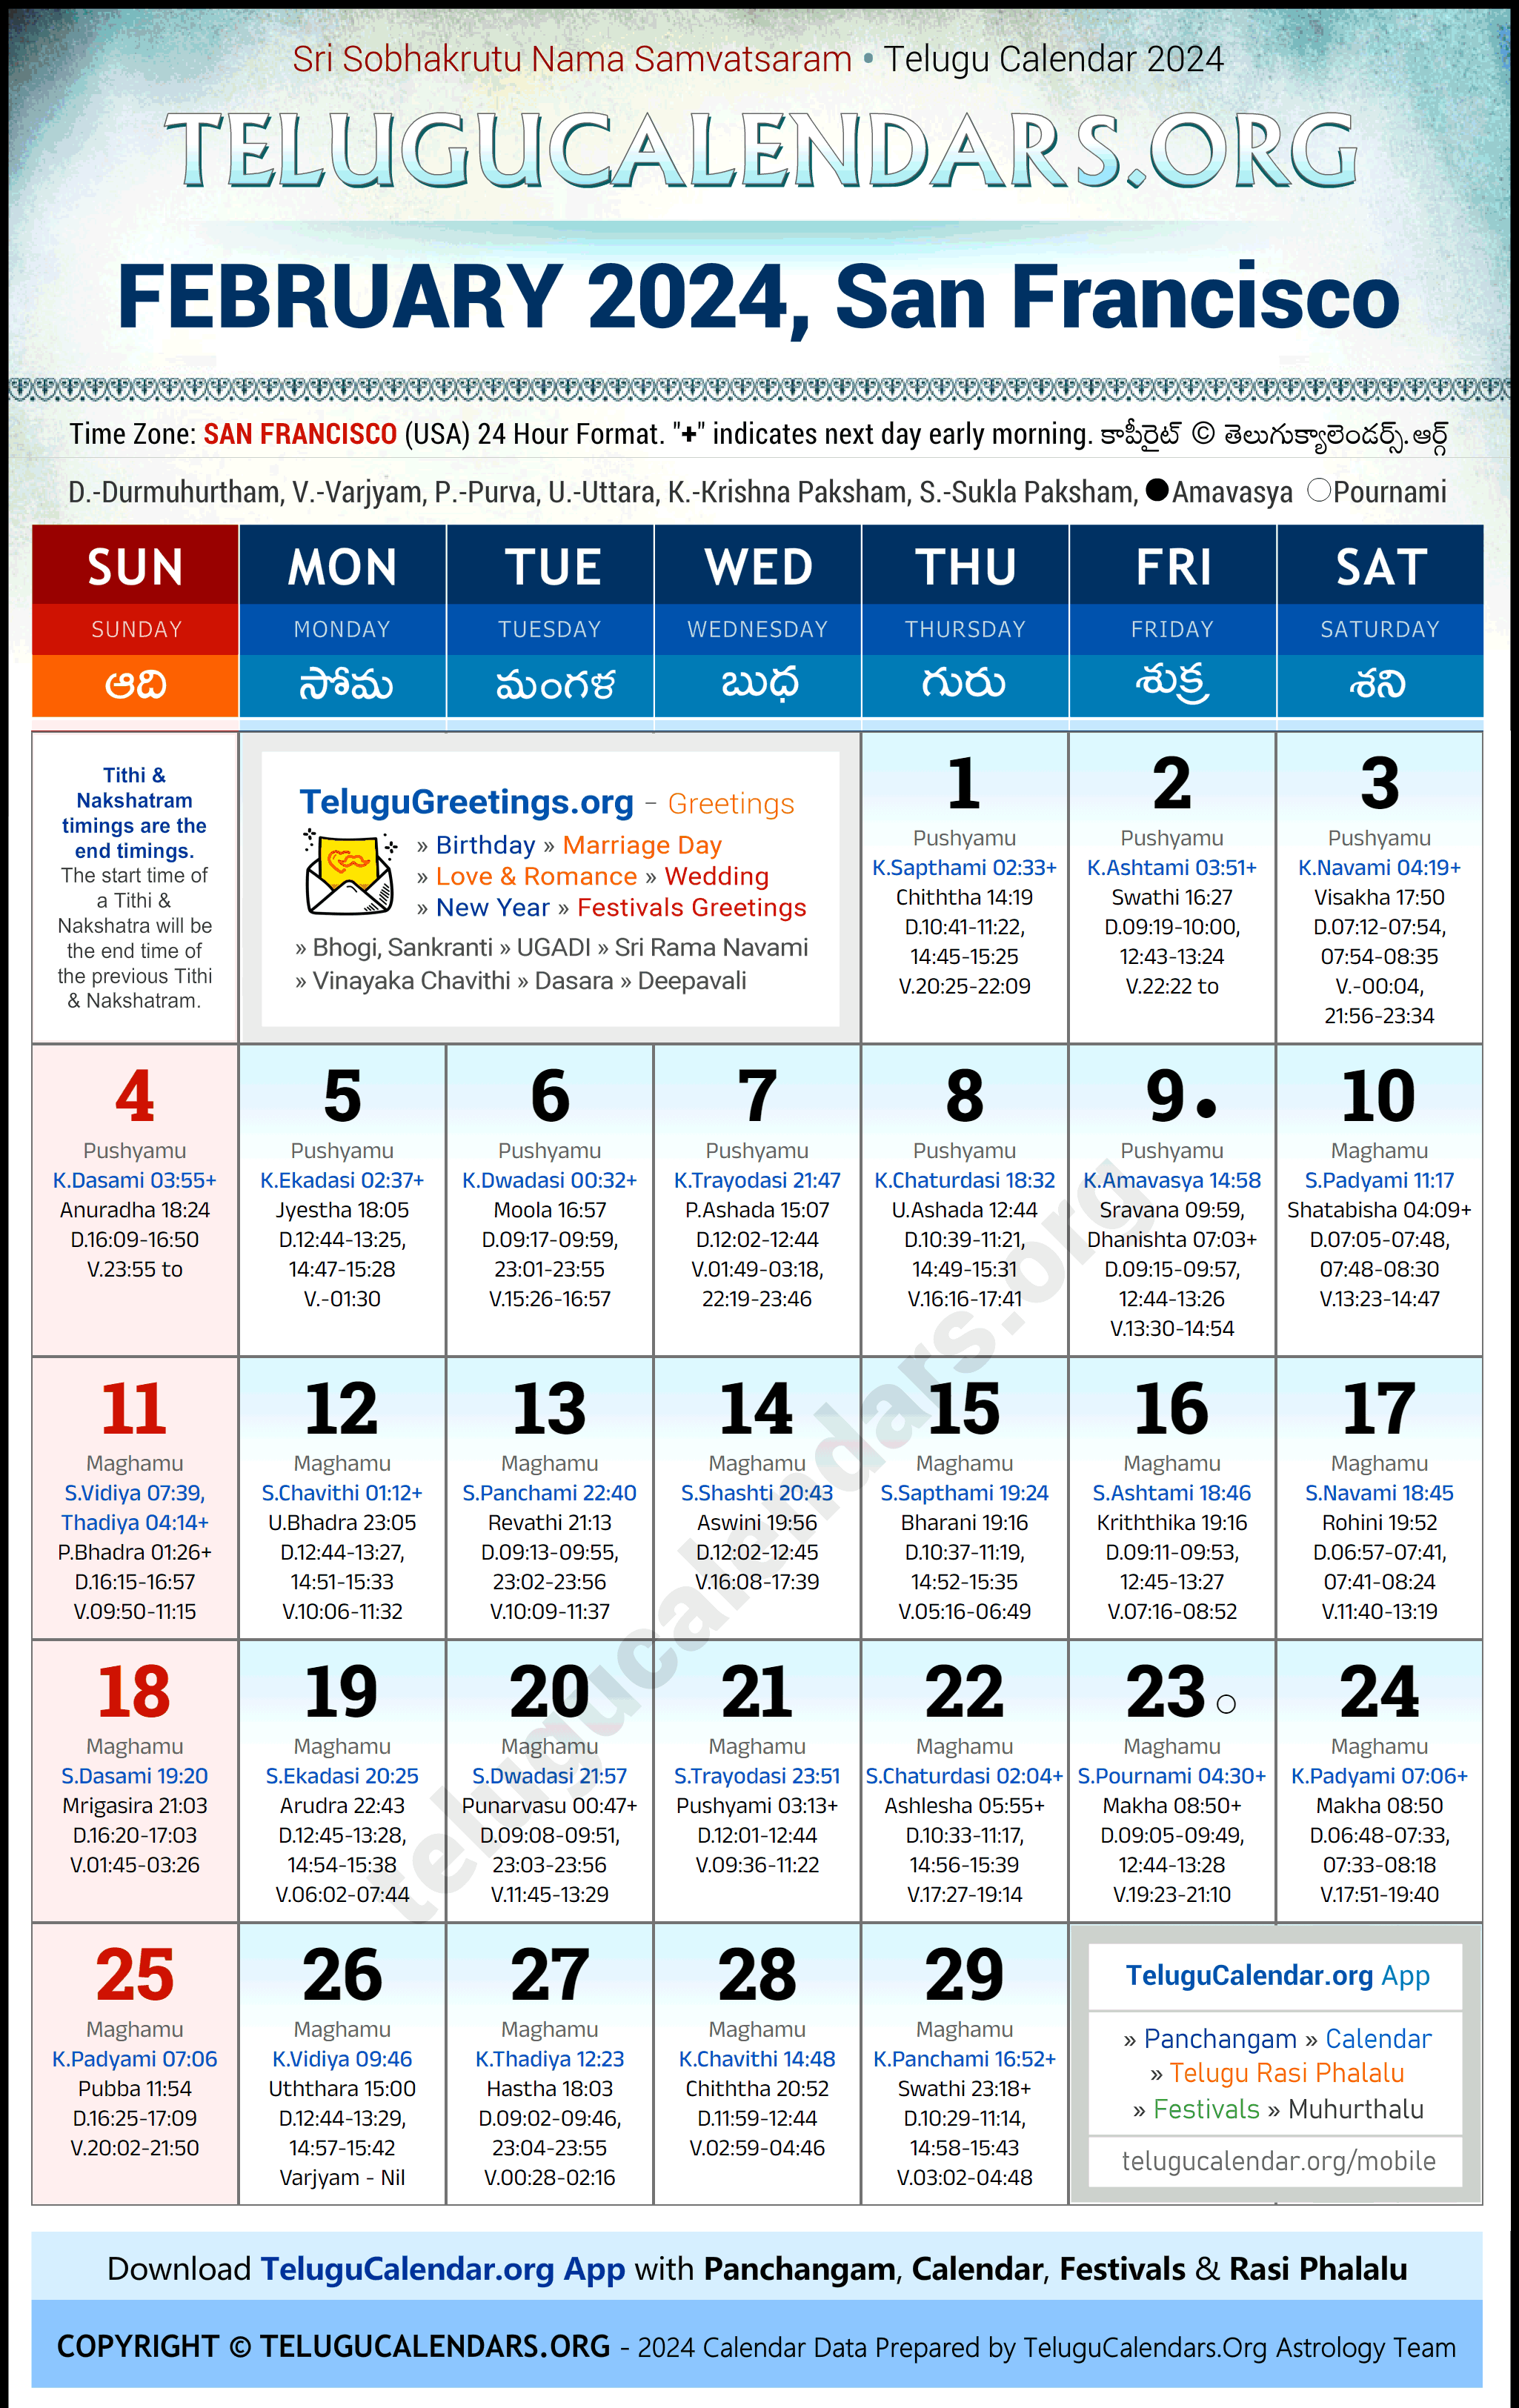 Telugu Calendar 2024 February Festivals for San Francisco